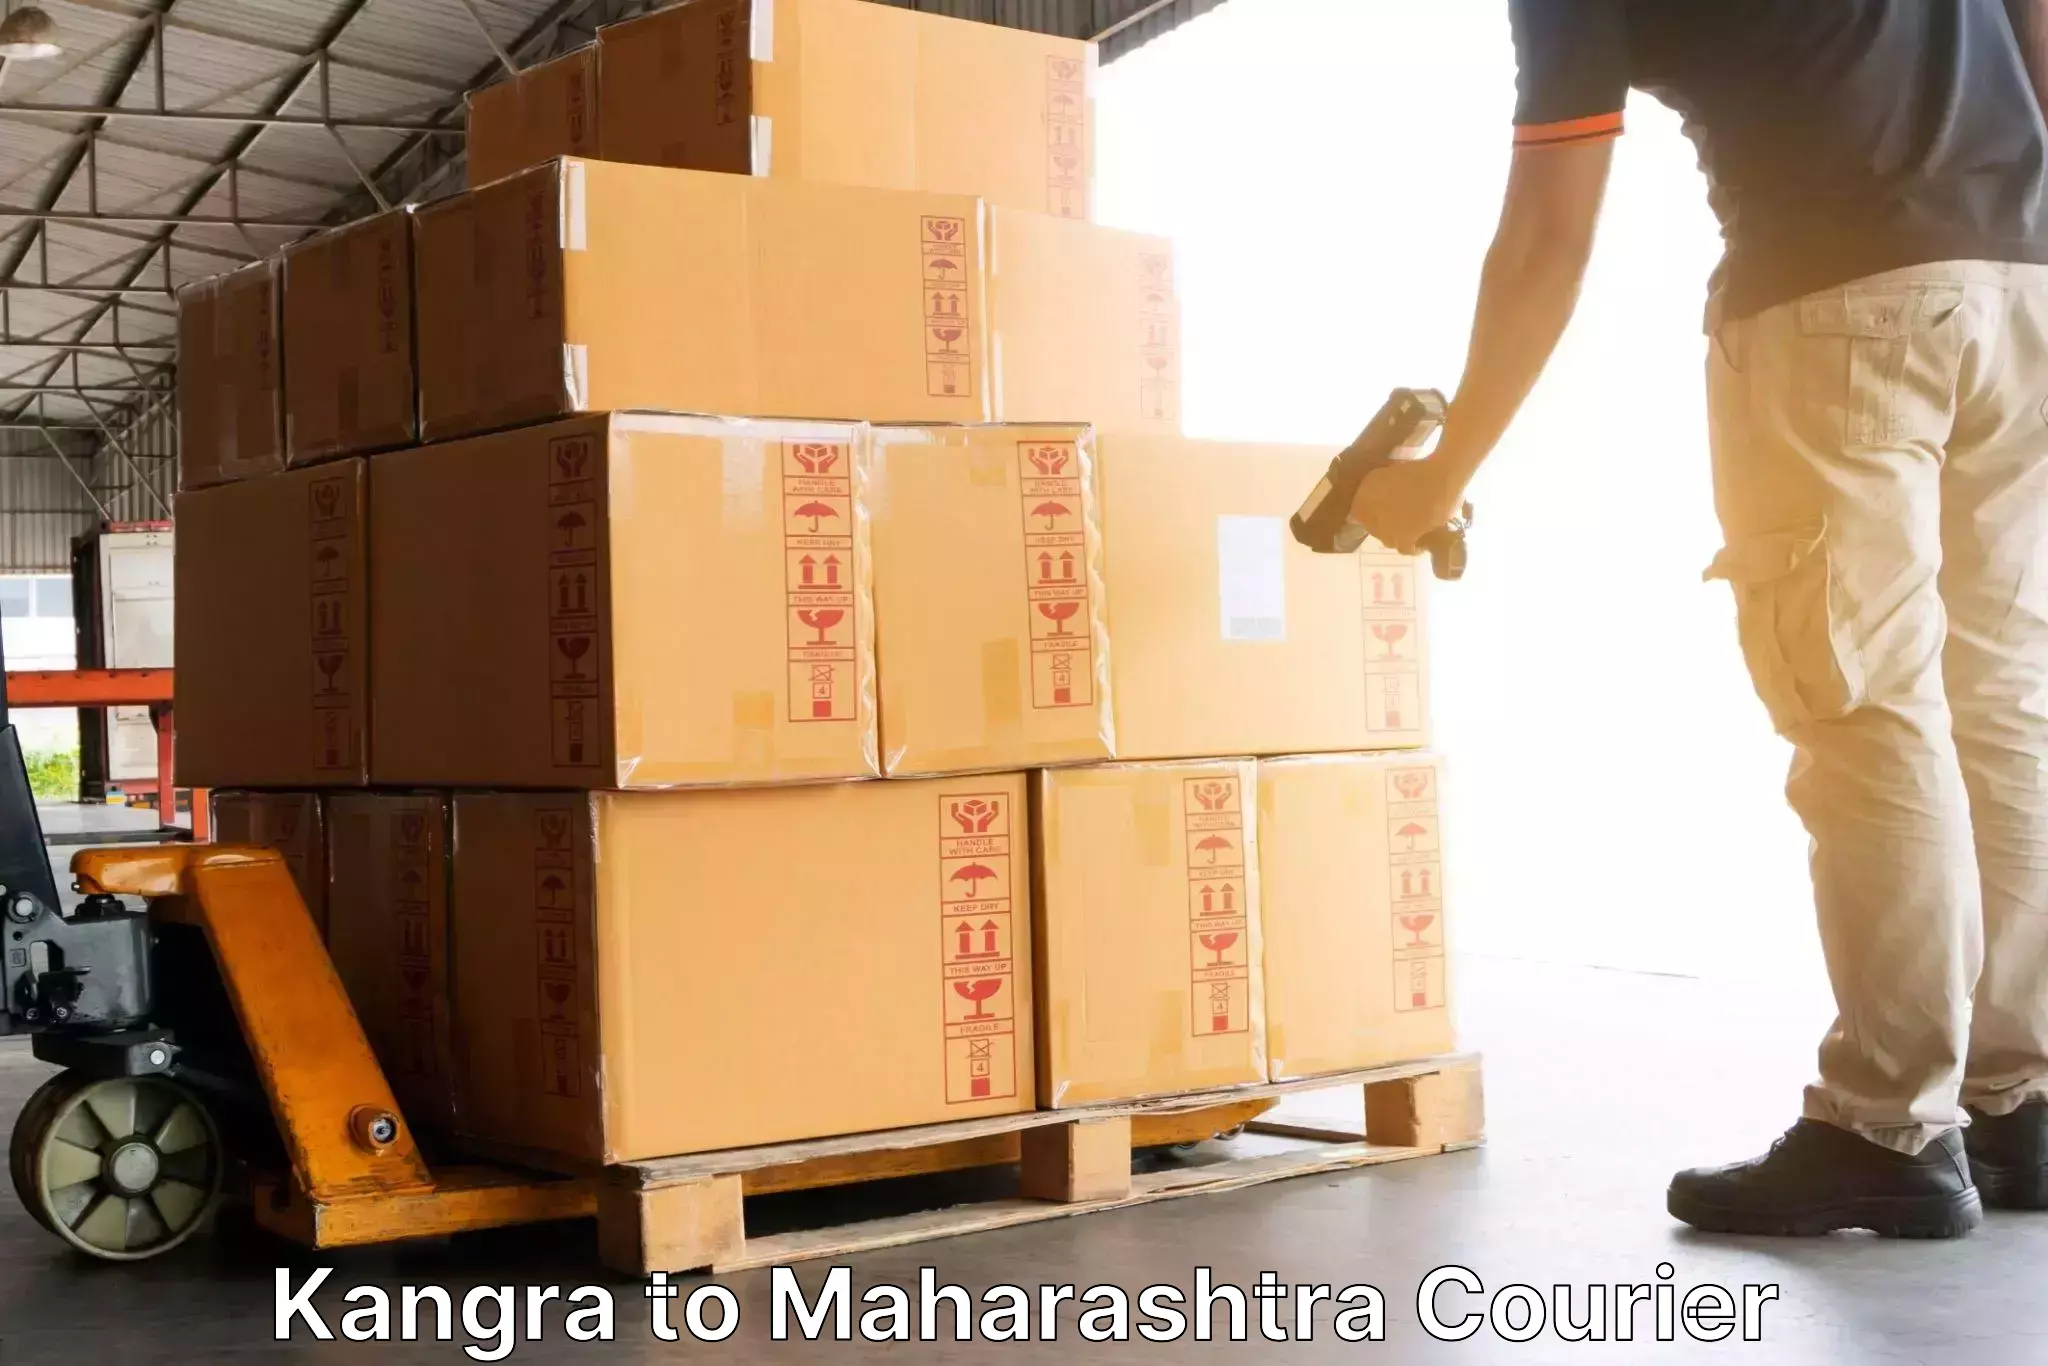 Courier service booking Kangra to Shivajinagar